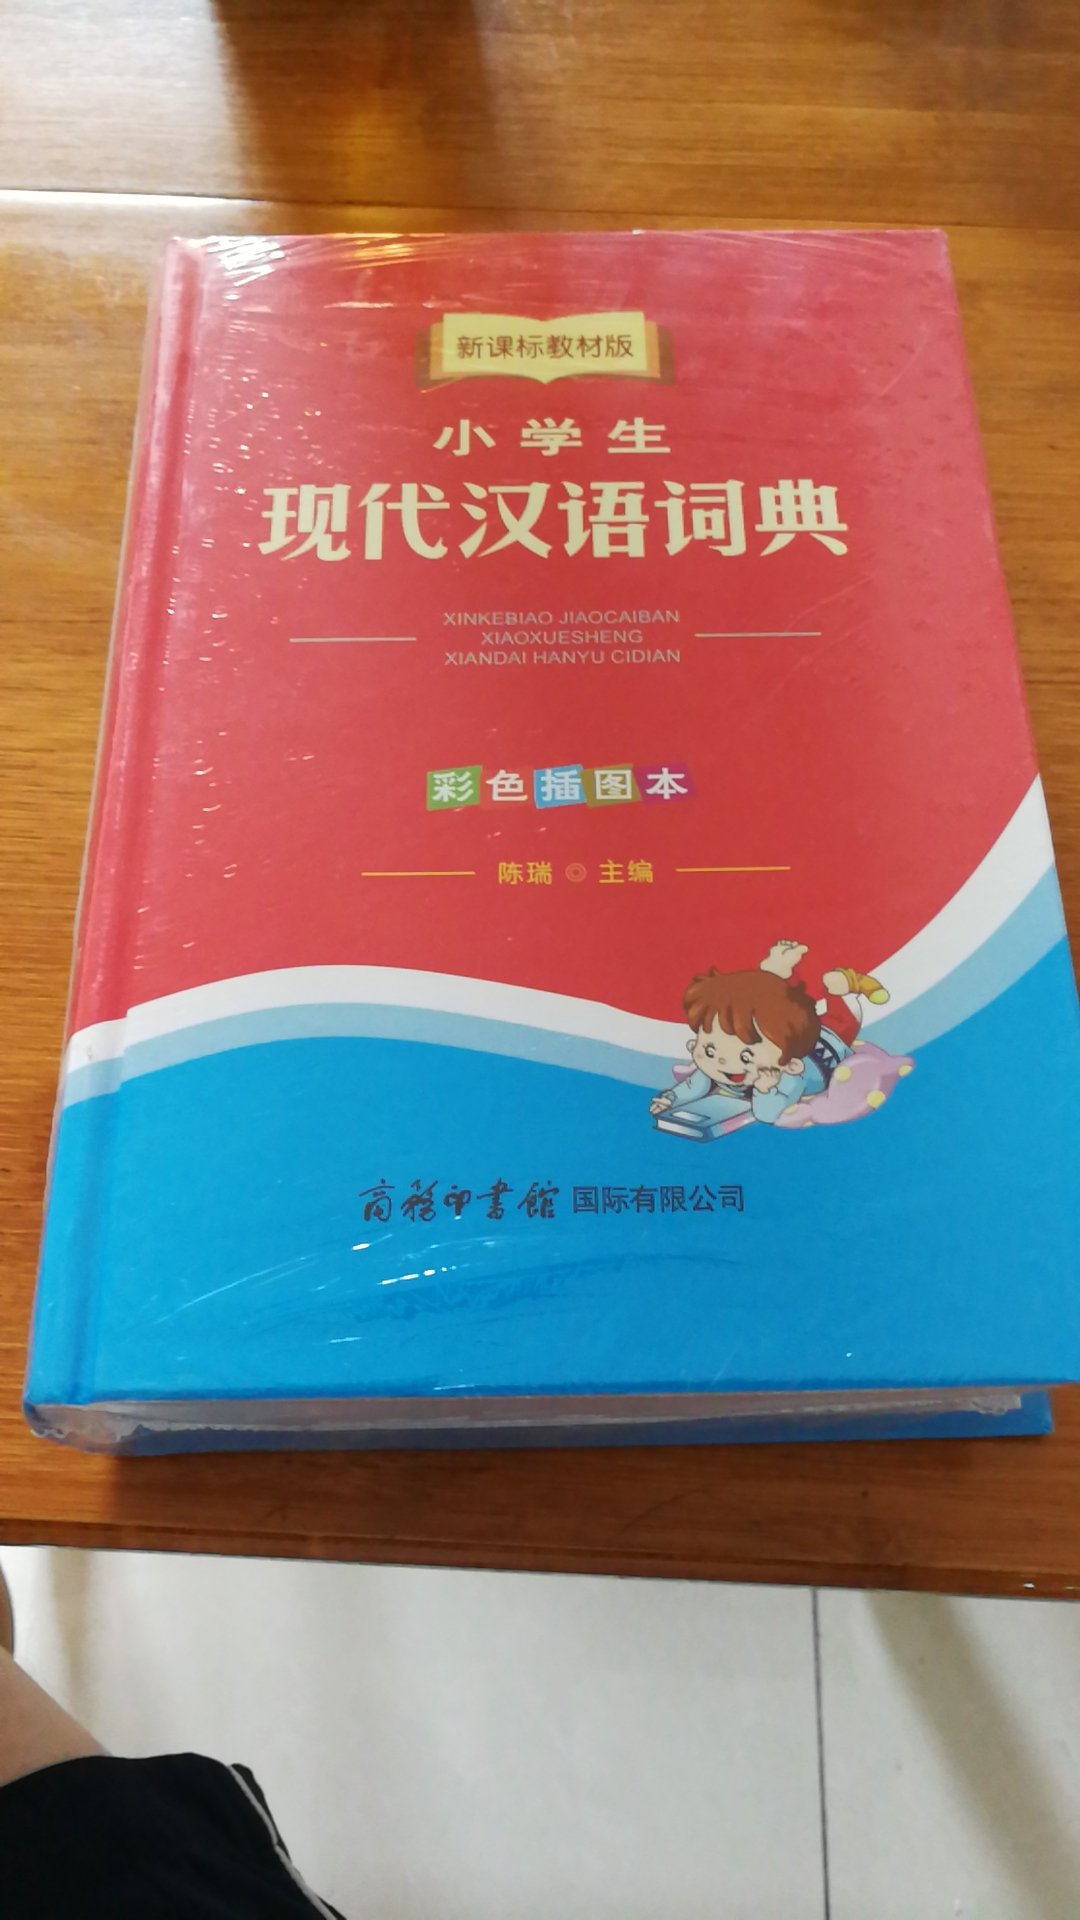 很实用的一本小学生新课标现代汉语词典。